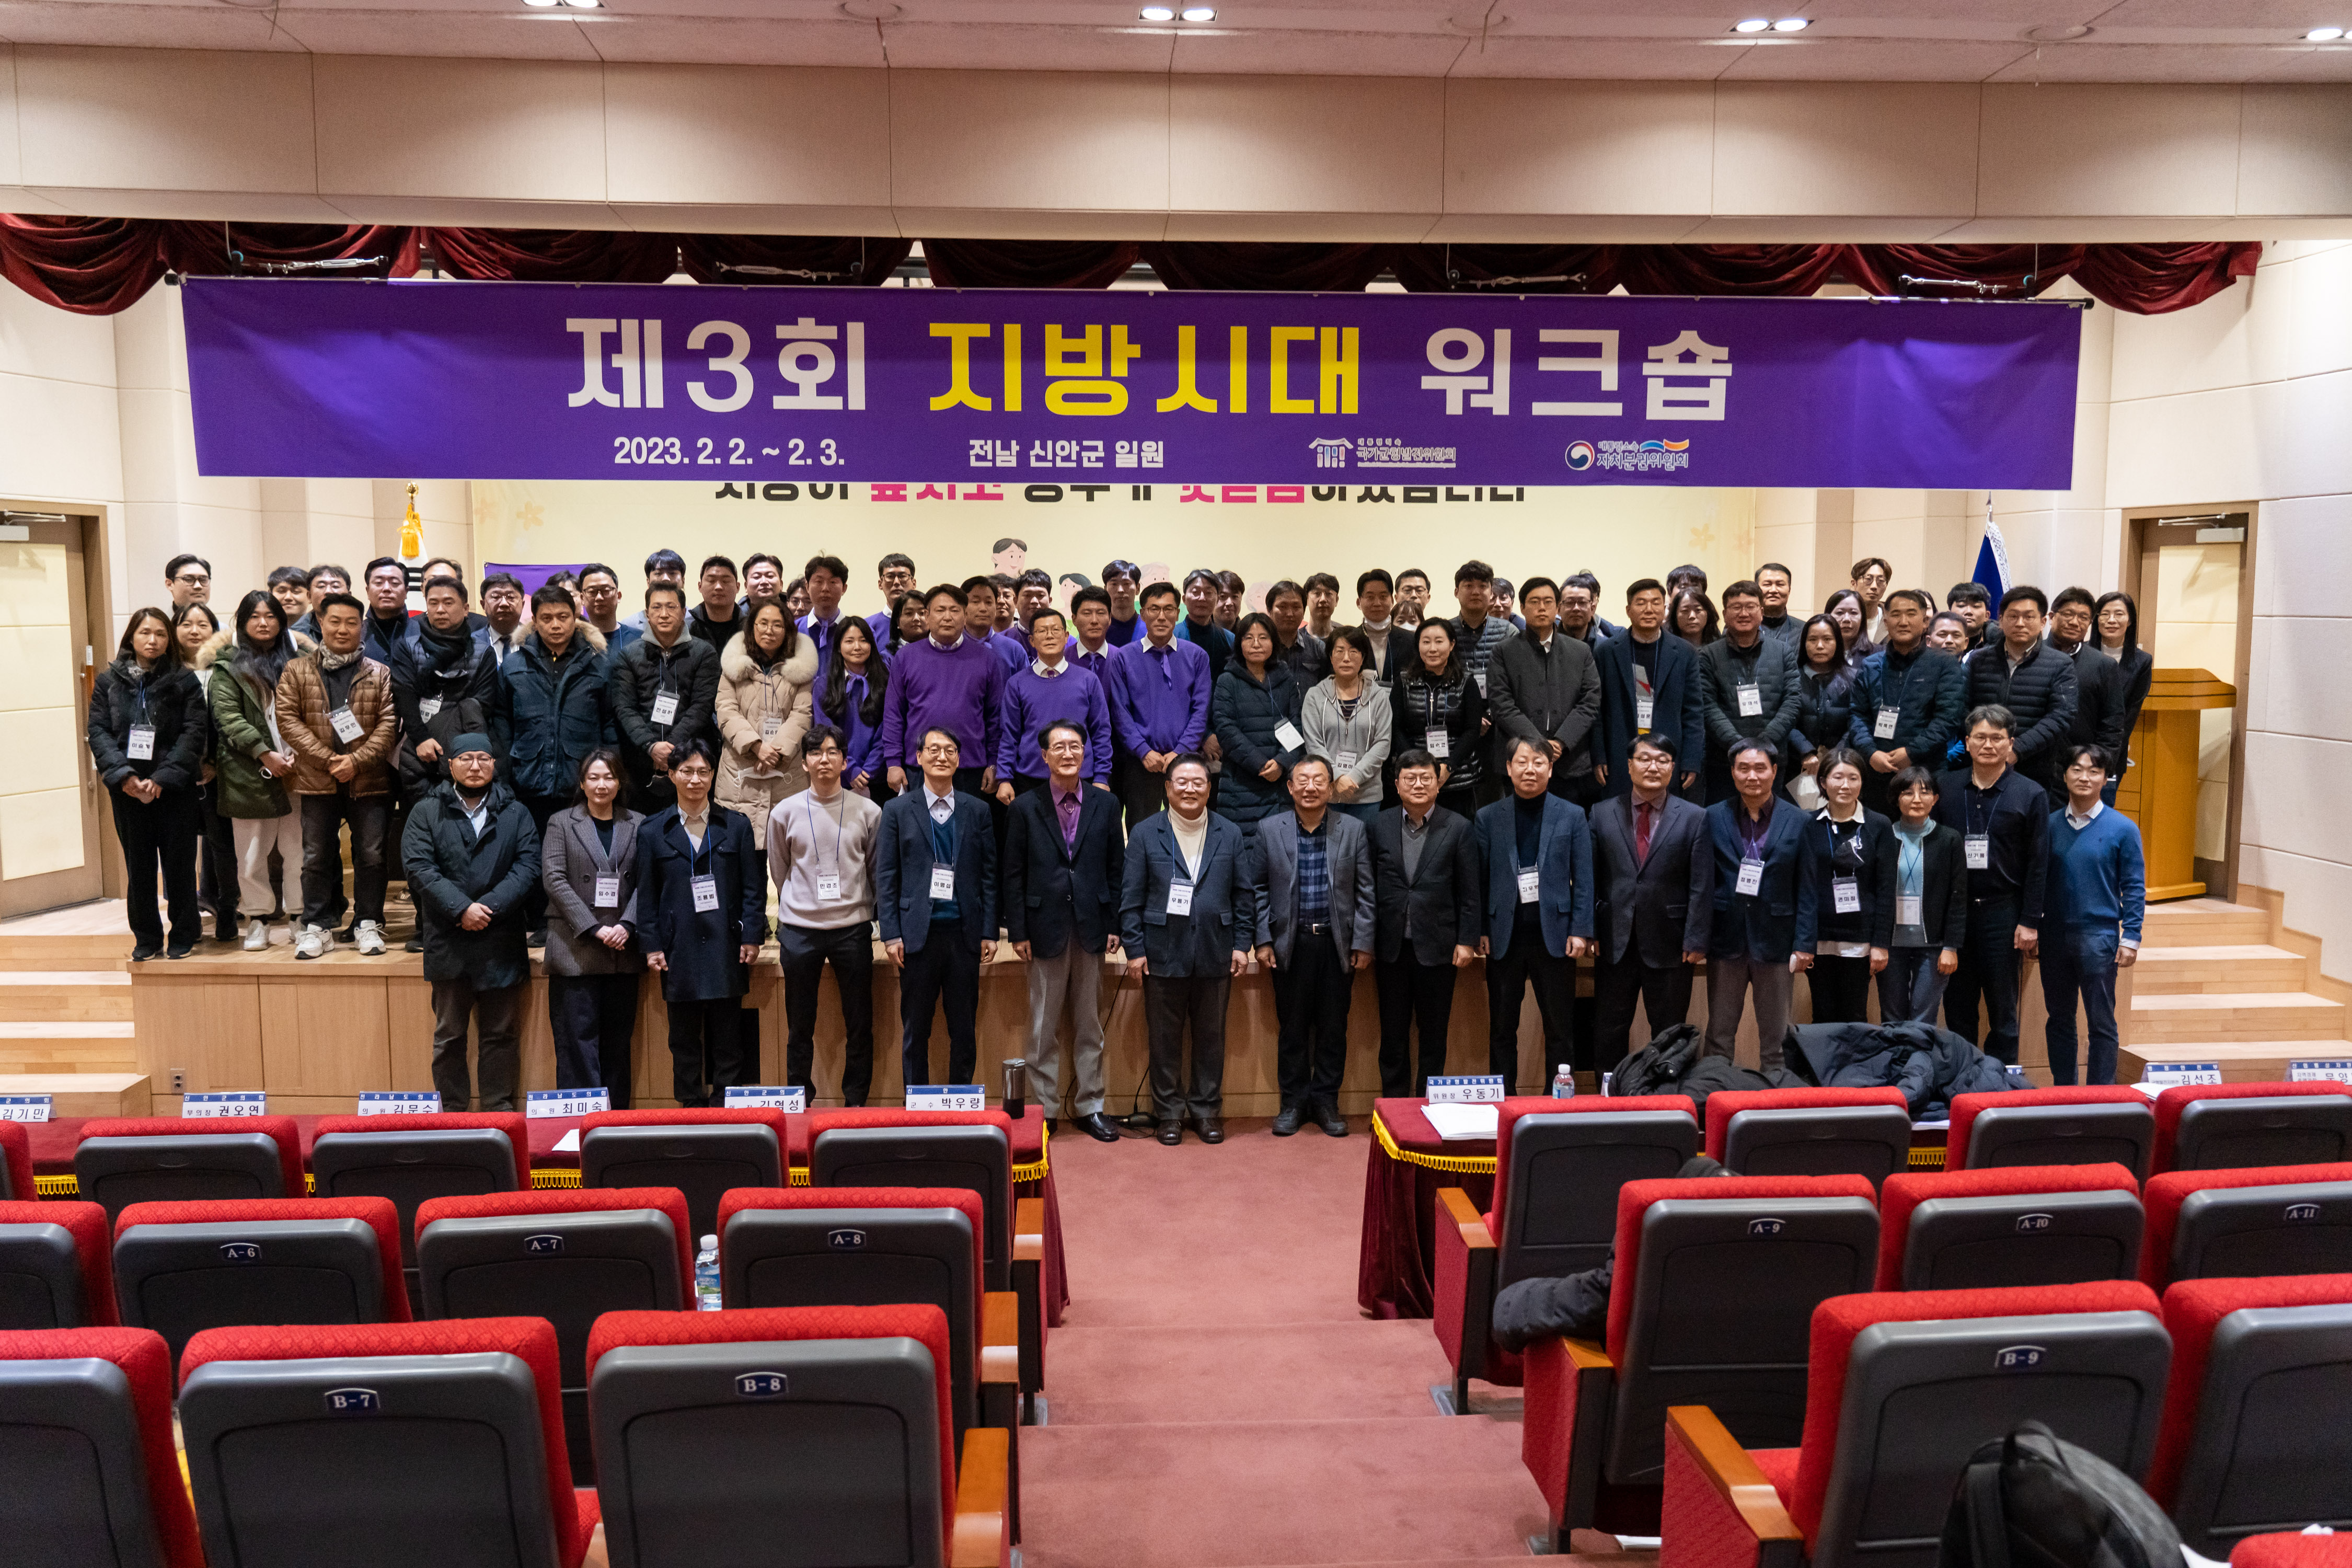 <사진1> 2일 개최된 신안군청에서「제3회 지방시대 워크숍」 기념사진 촬영을 하고 있다.